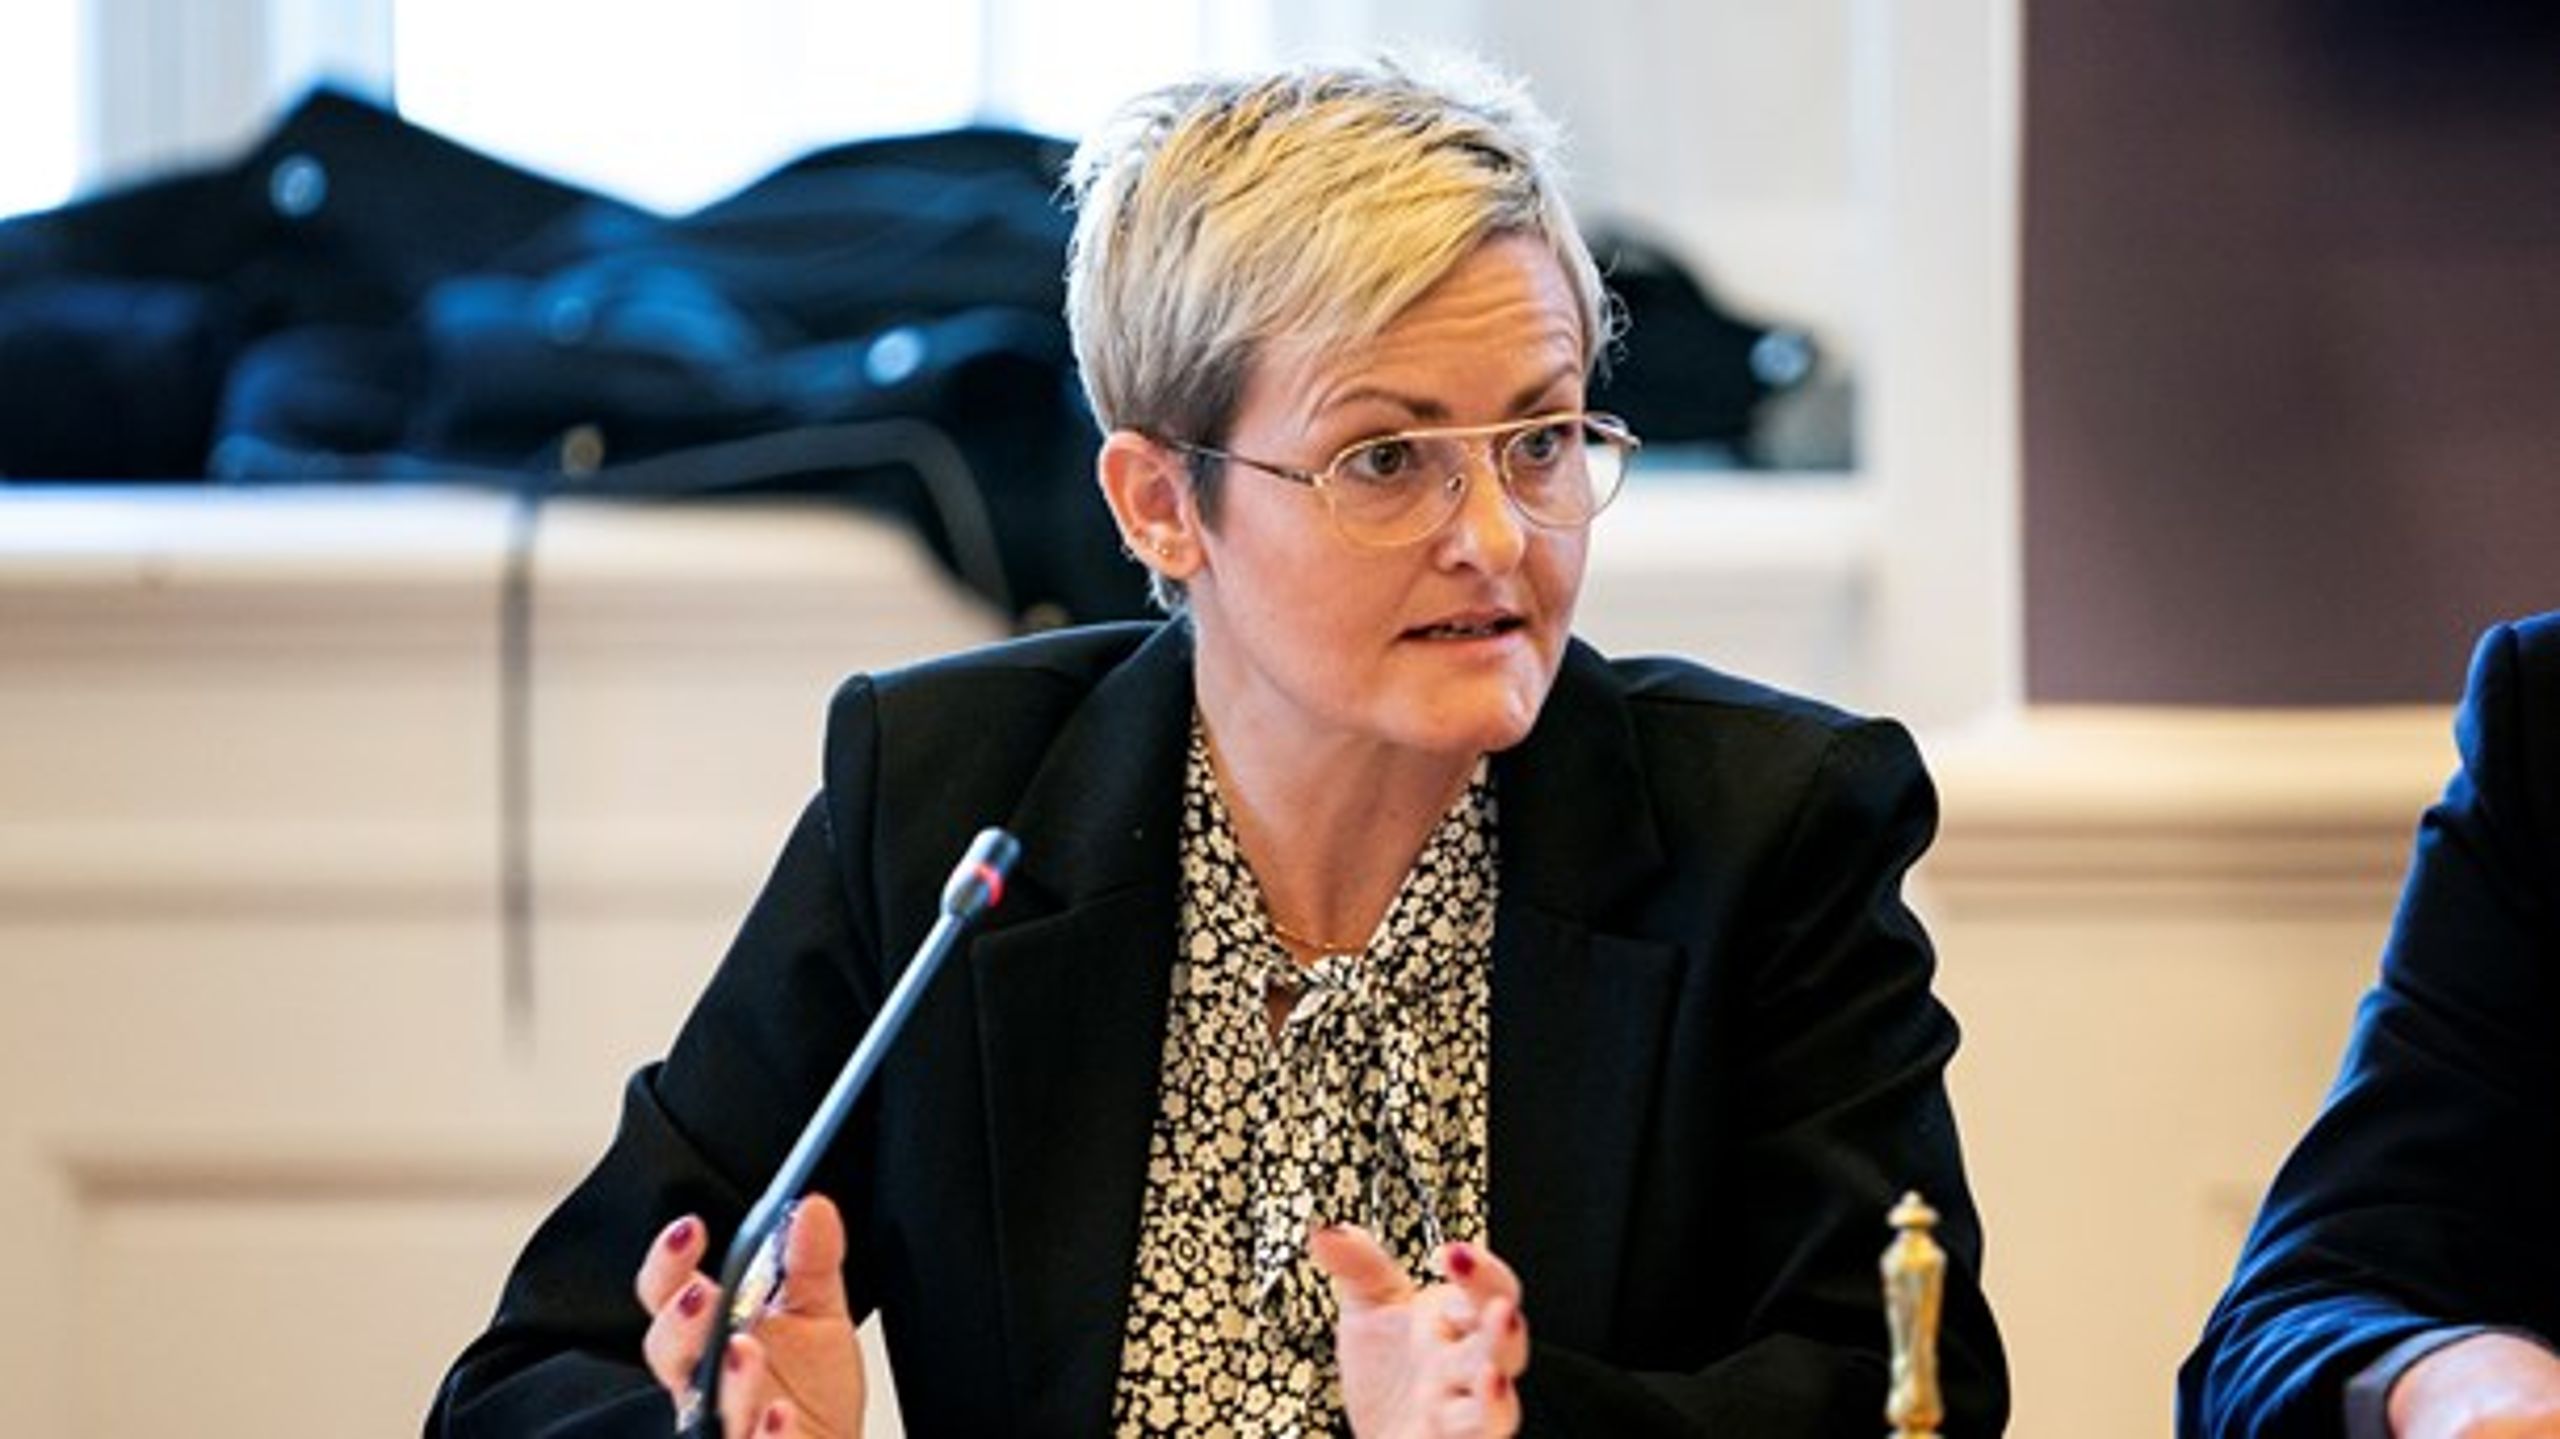 Børne- og undervisningsminister Pernille Rosenkrantz-Theil i samråd om at sikre, at kommunerne overholder loven i forhold til antallet af elever i hver skoleklasse.